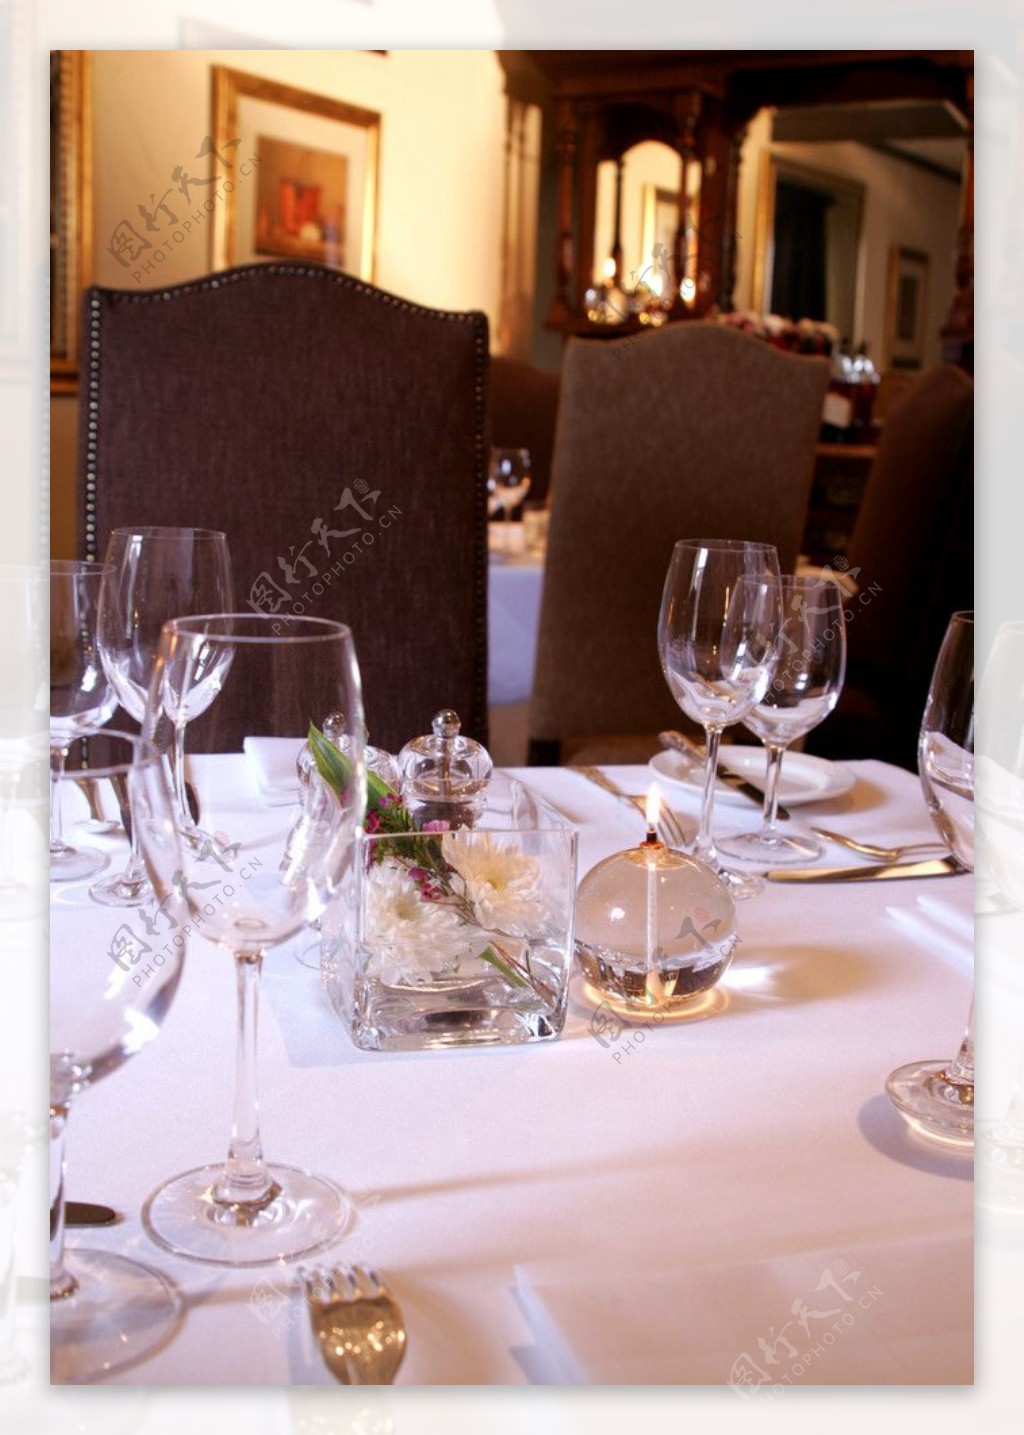 餐桌餐厅餐具西餐摆设布置透明玻璃皮椅图片